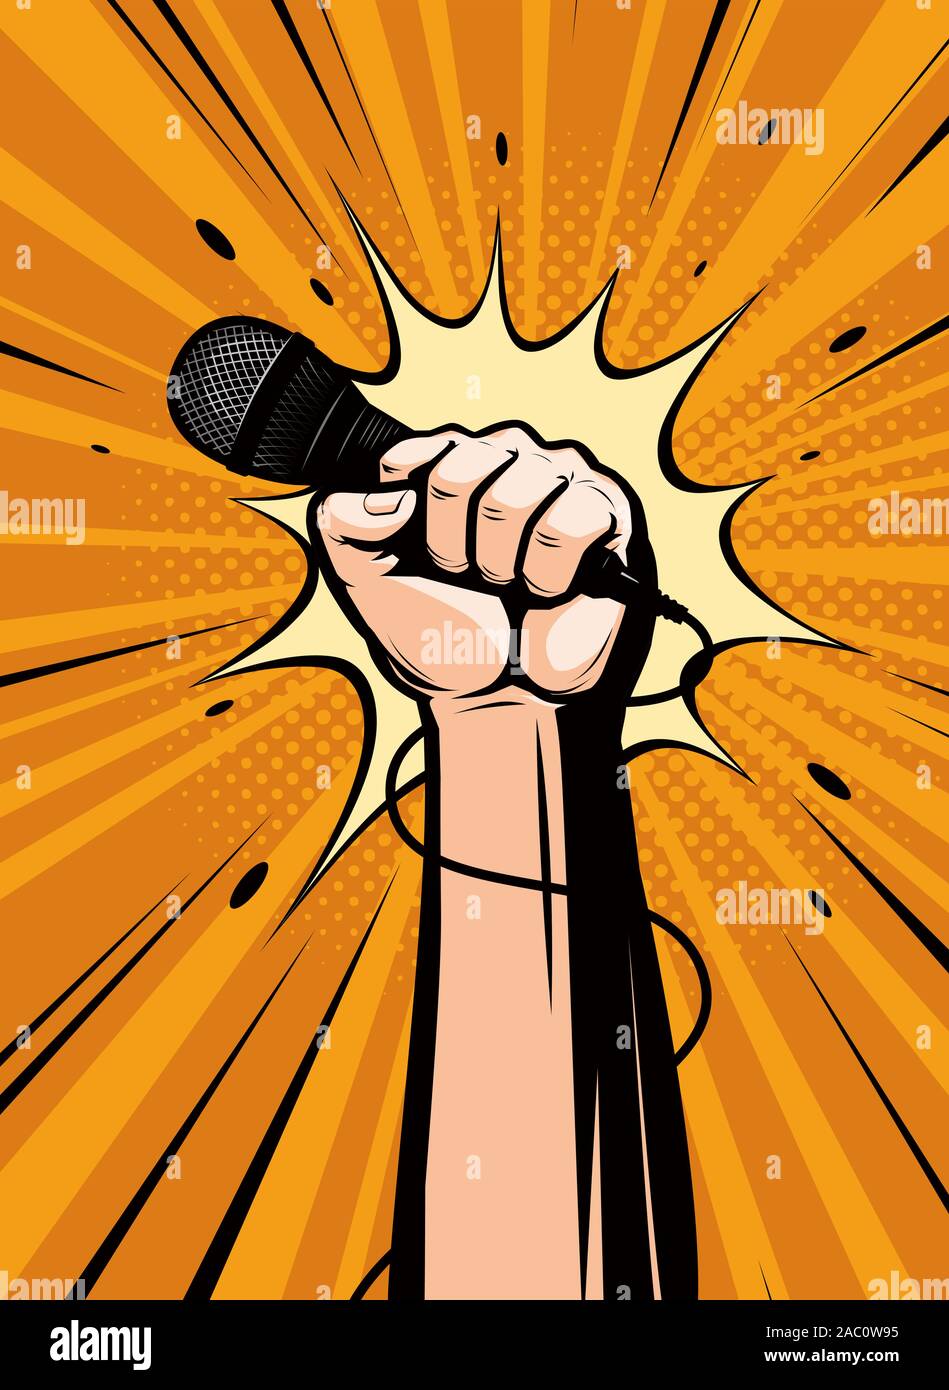 Microphone dessiné à la main dans un style comique rétro pop art. Illustration vectorielle de dessin animé Illustration de Vecteur